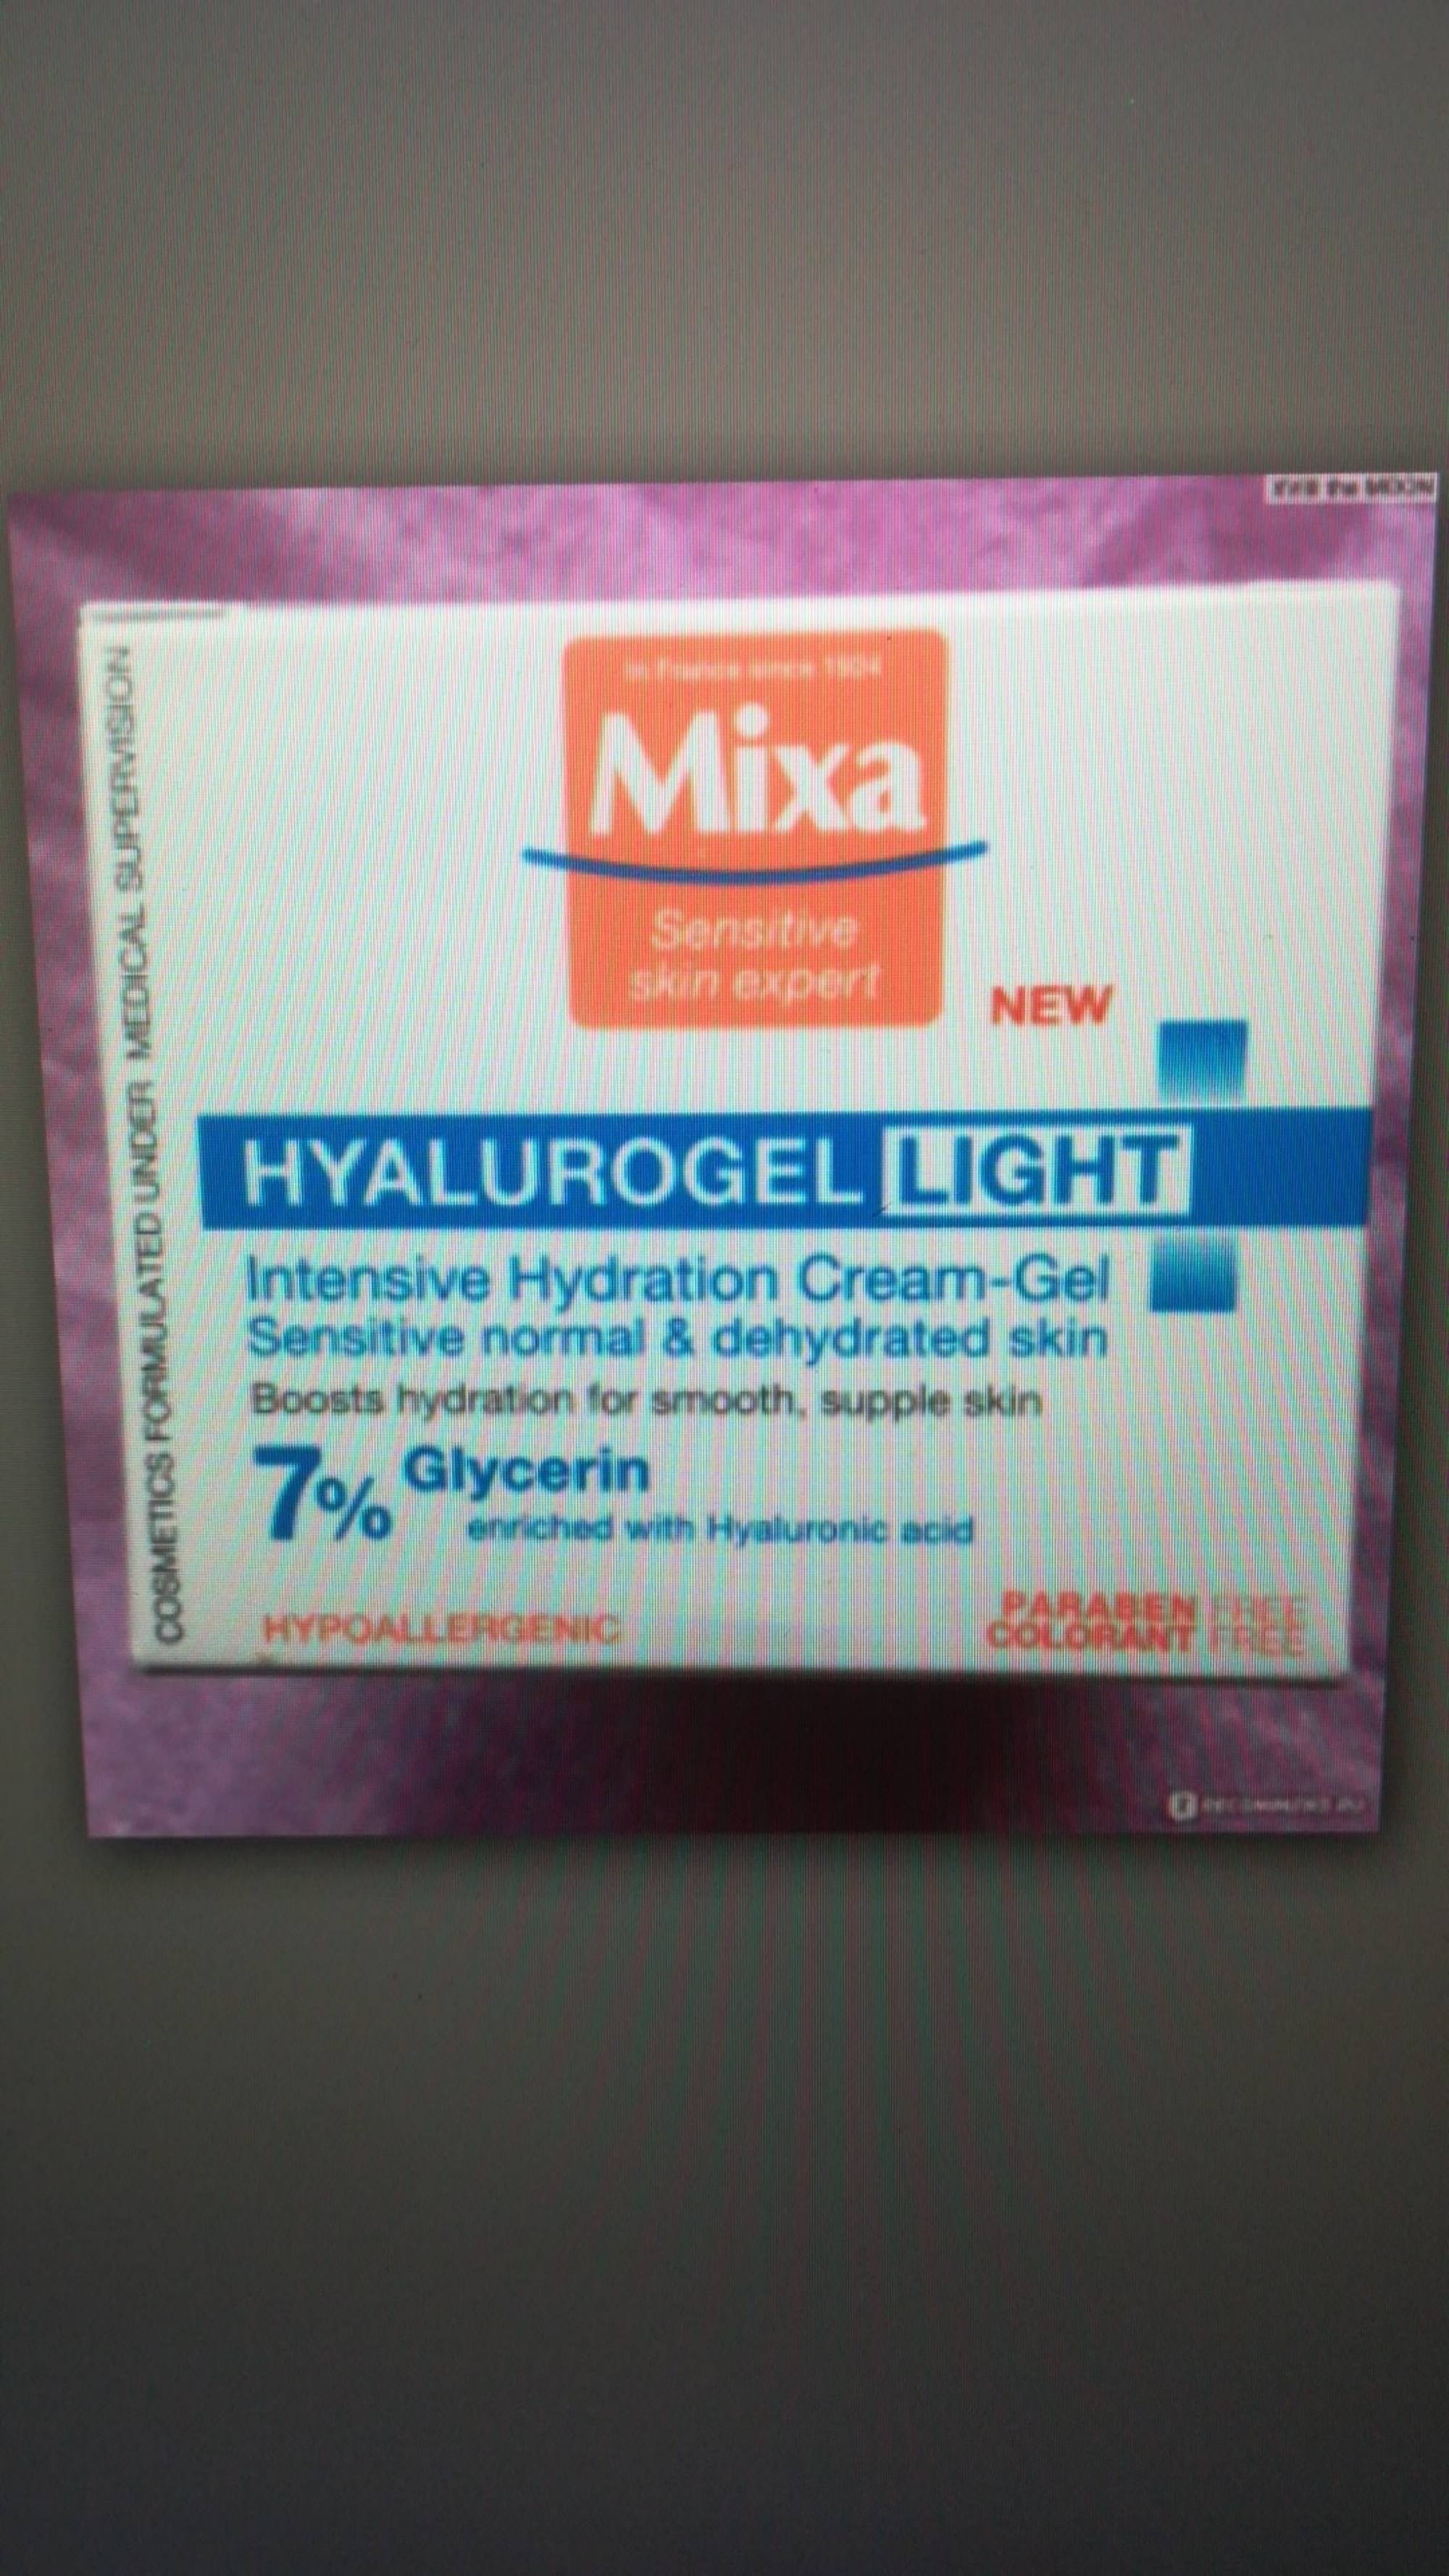 MIXA - Hyalurogel light - Intensive hydration cream-gel